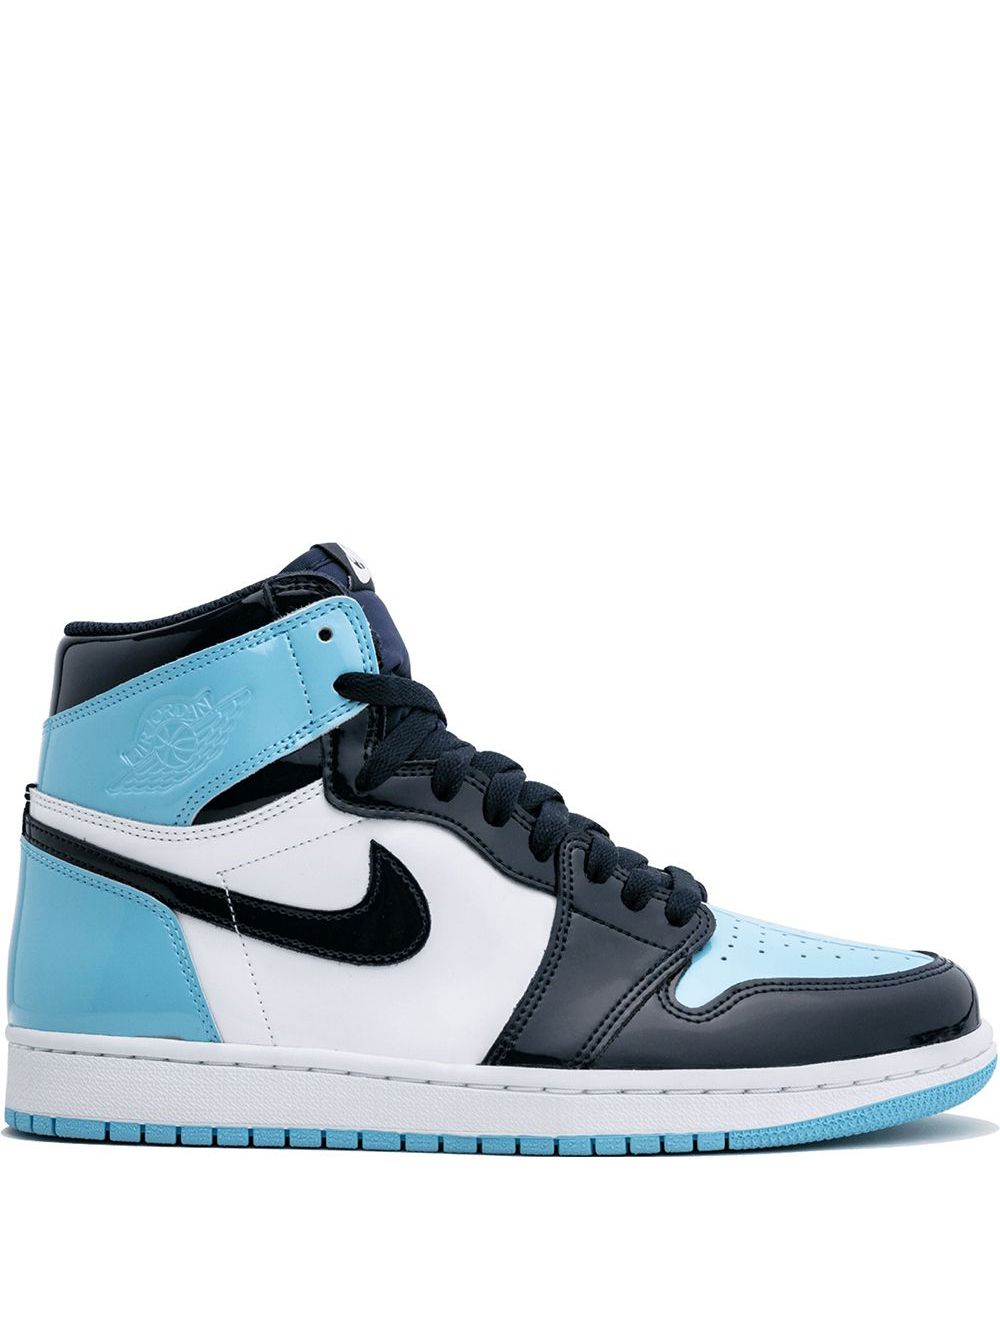 Jordan Air Jordan 1 High OG "UNC Patent Leather" sneakers - Blue